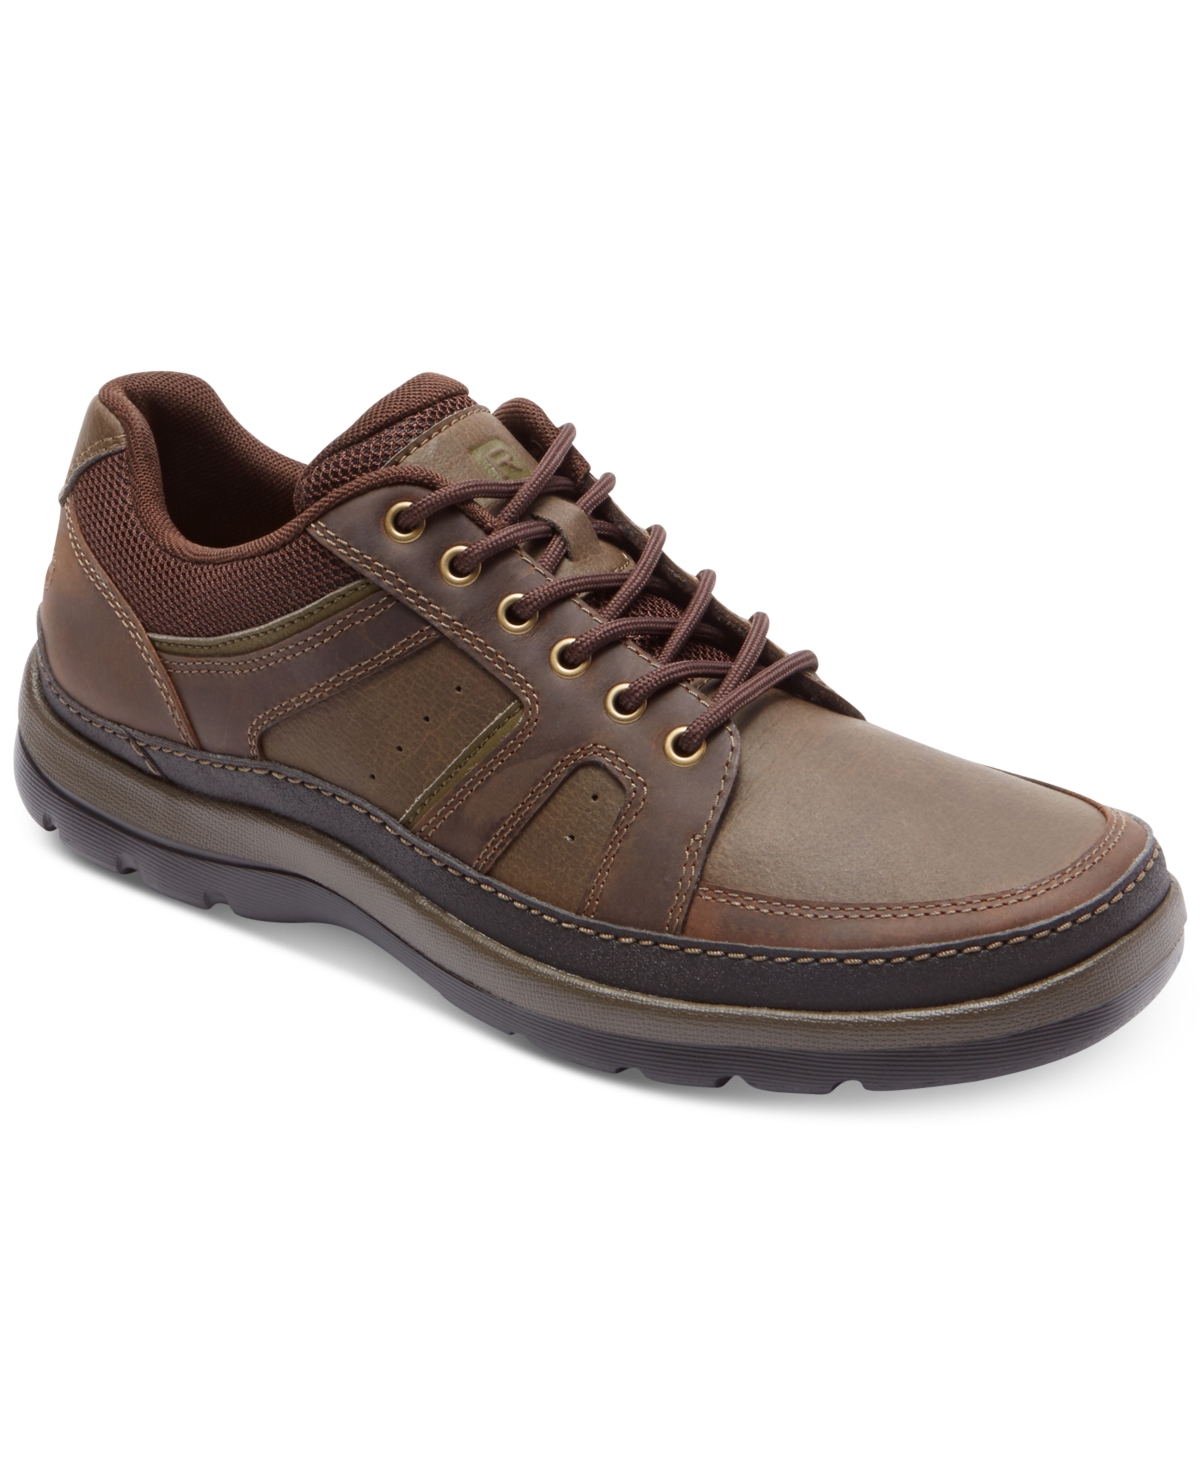 Men's Get Your Kicks Mudguard Blucher Shoes - Dark Brown